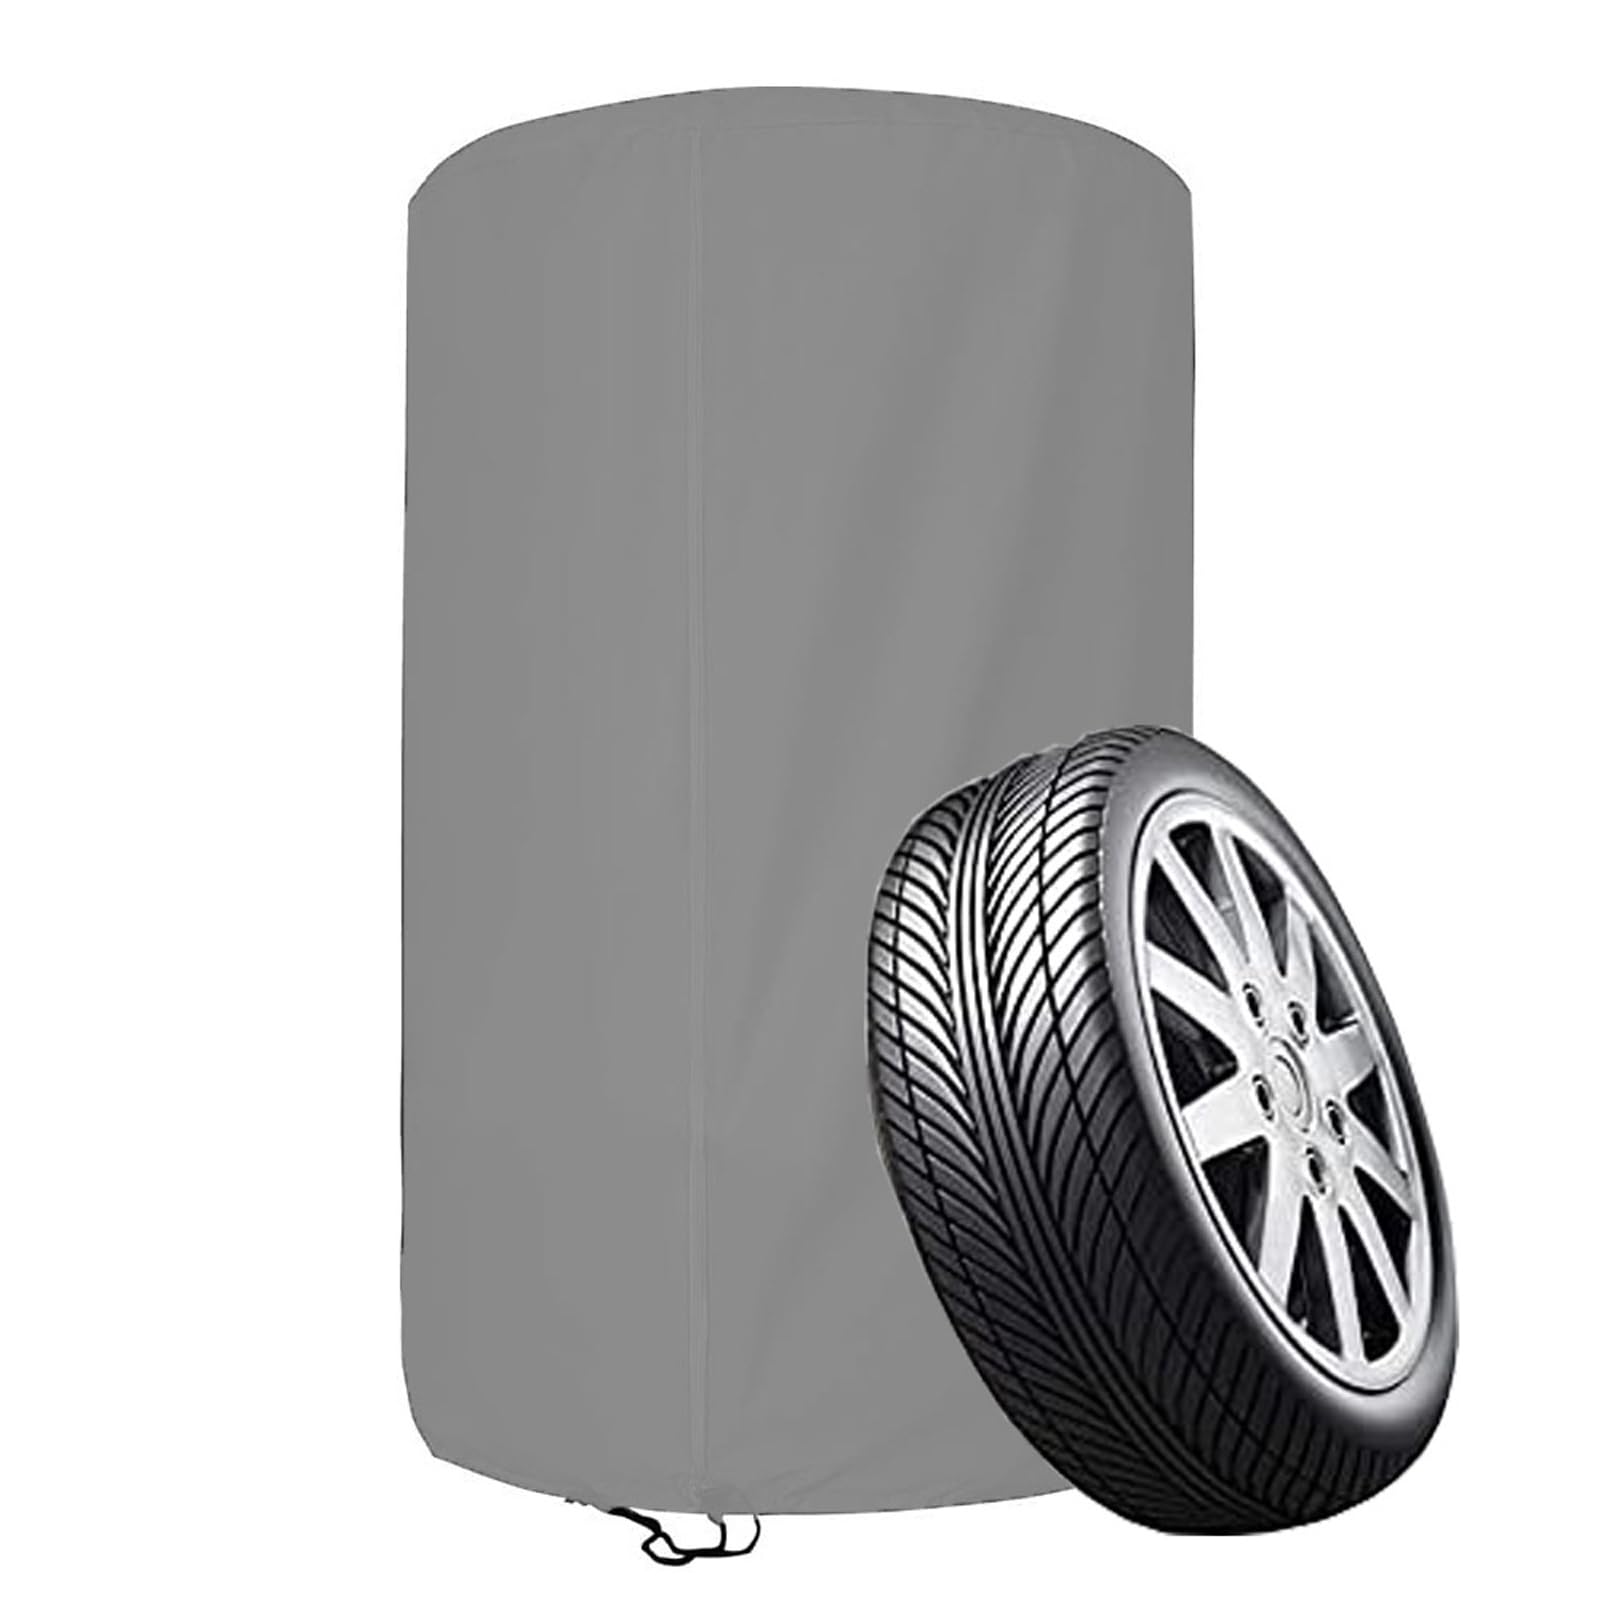 Reifenabdeckung für 4 Reifen, wasserdichte Reifenschutzhülle für 4 Autoreifen, 210D /420D OxfordAufbewahrungstasche für 4 Ersatzreifen mit Reißverschluss(Size:420D Oxford ：73 * 110cm,Color:Gray) von Crysterris